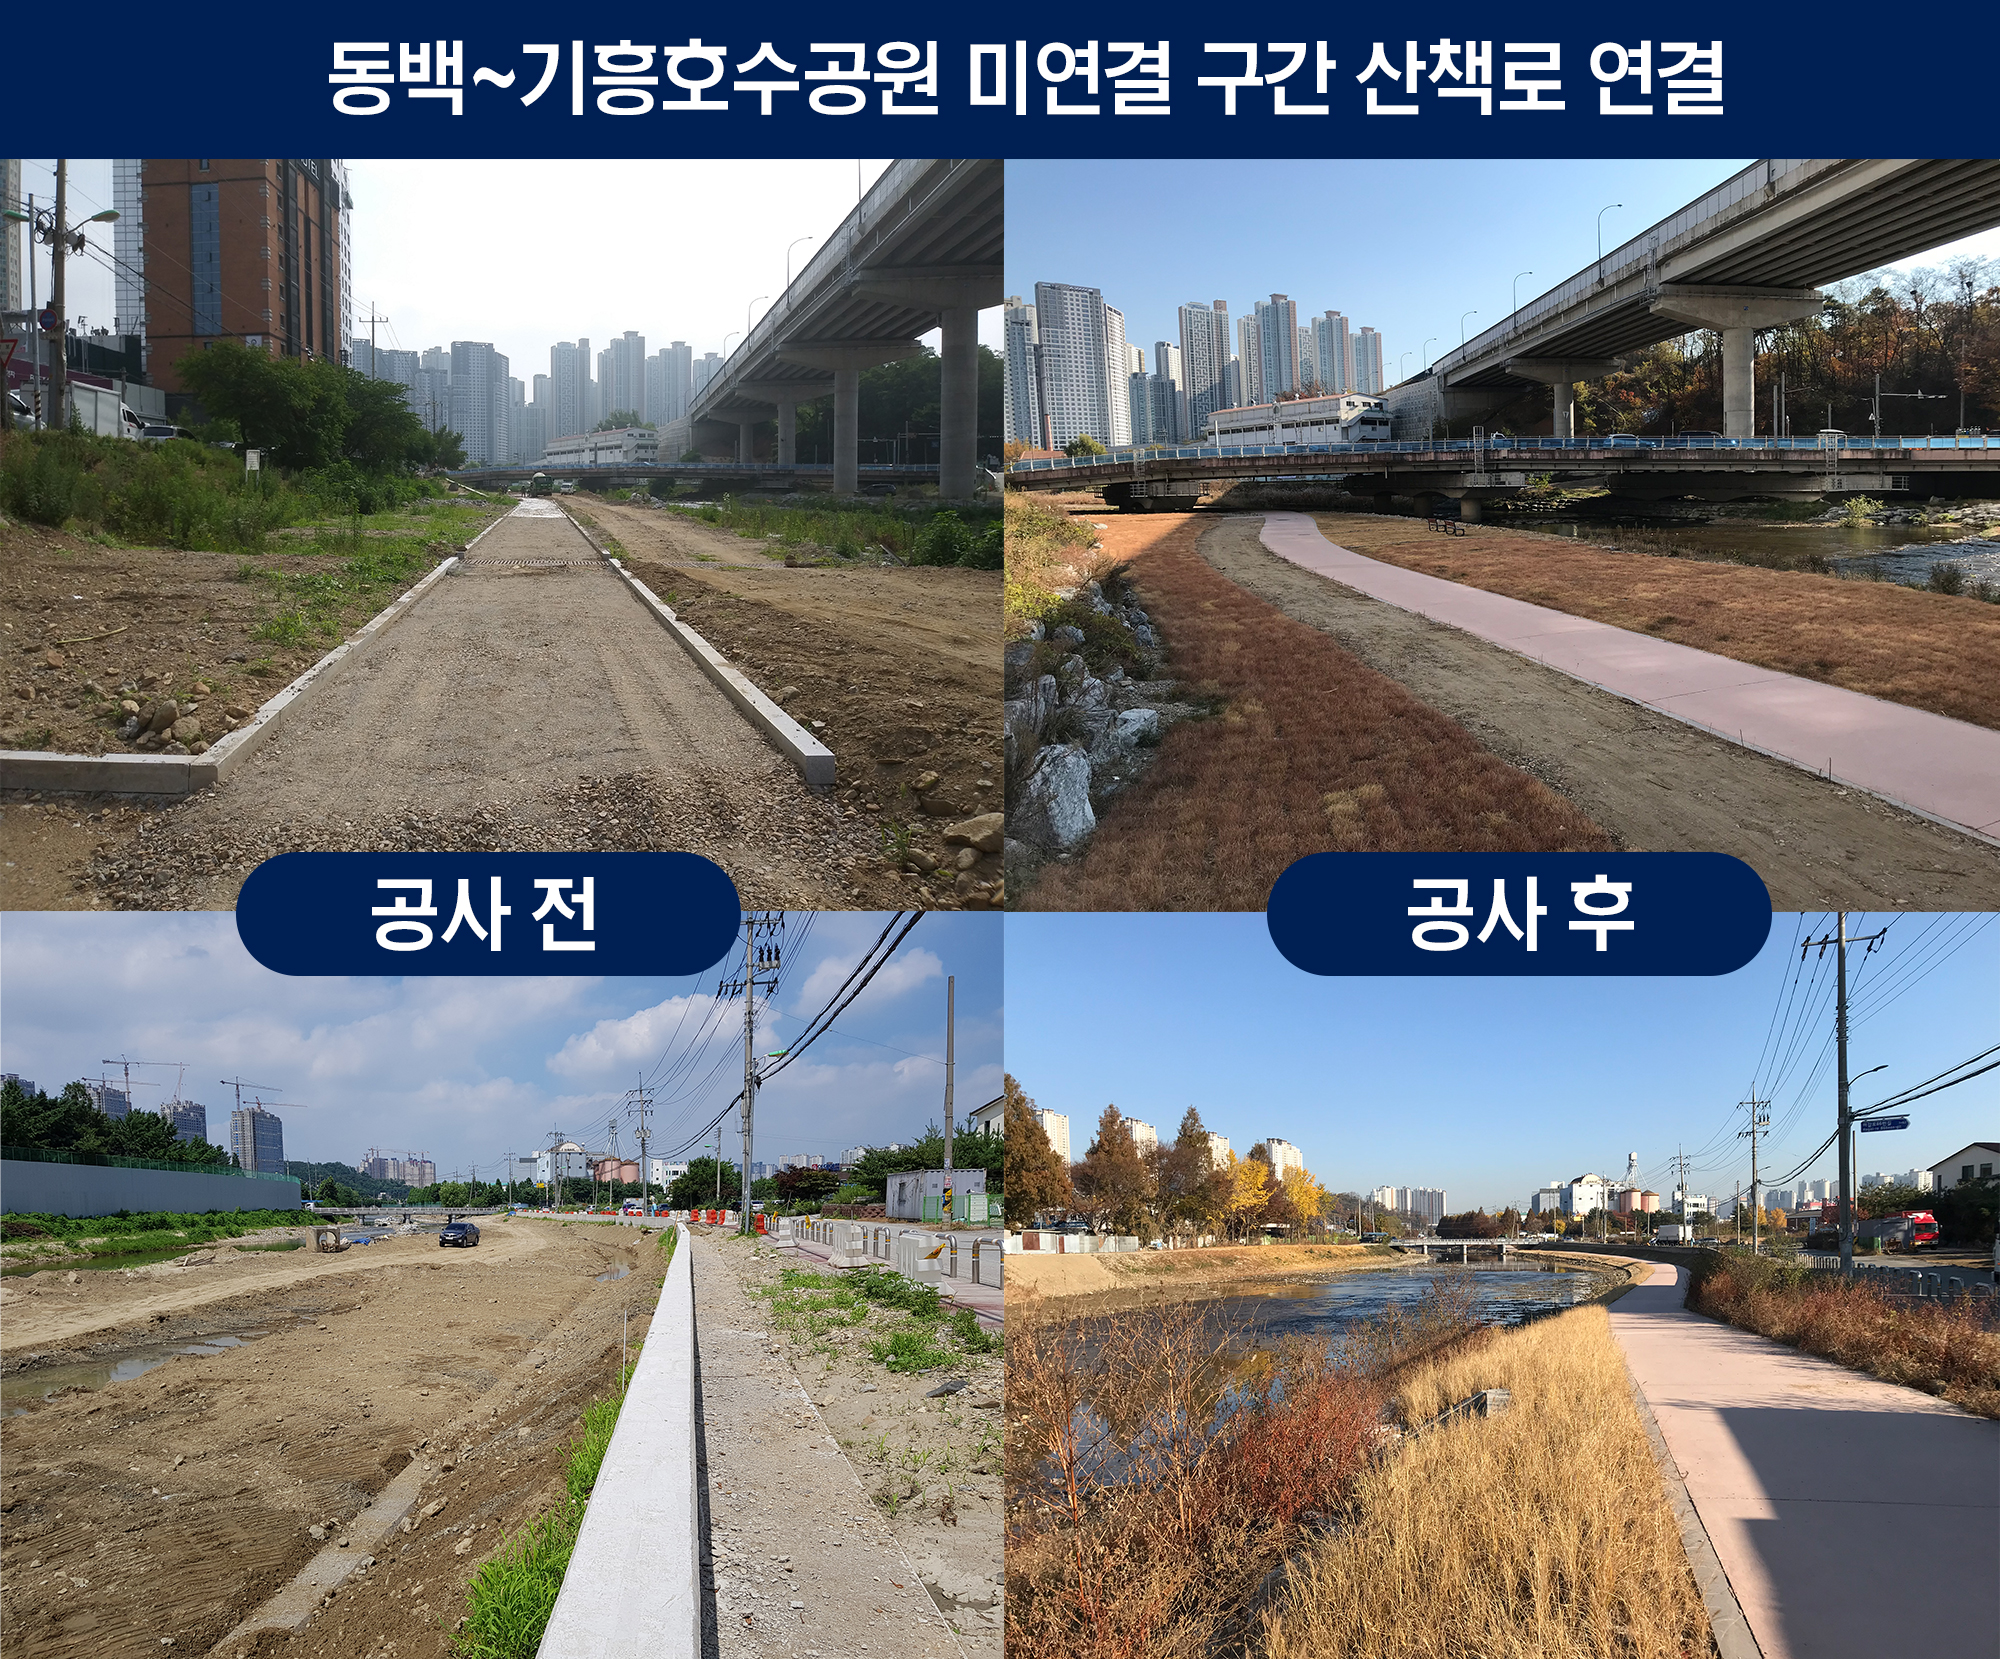 동백~기흥호수공원 산책로 17.5km 구간 연결